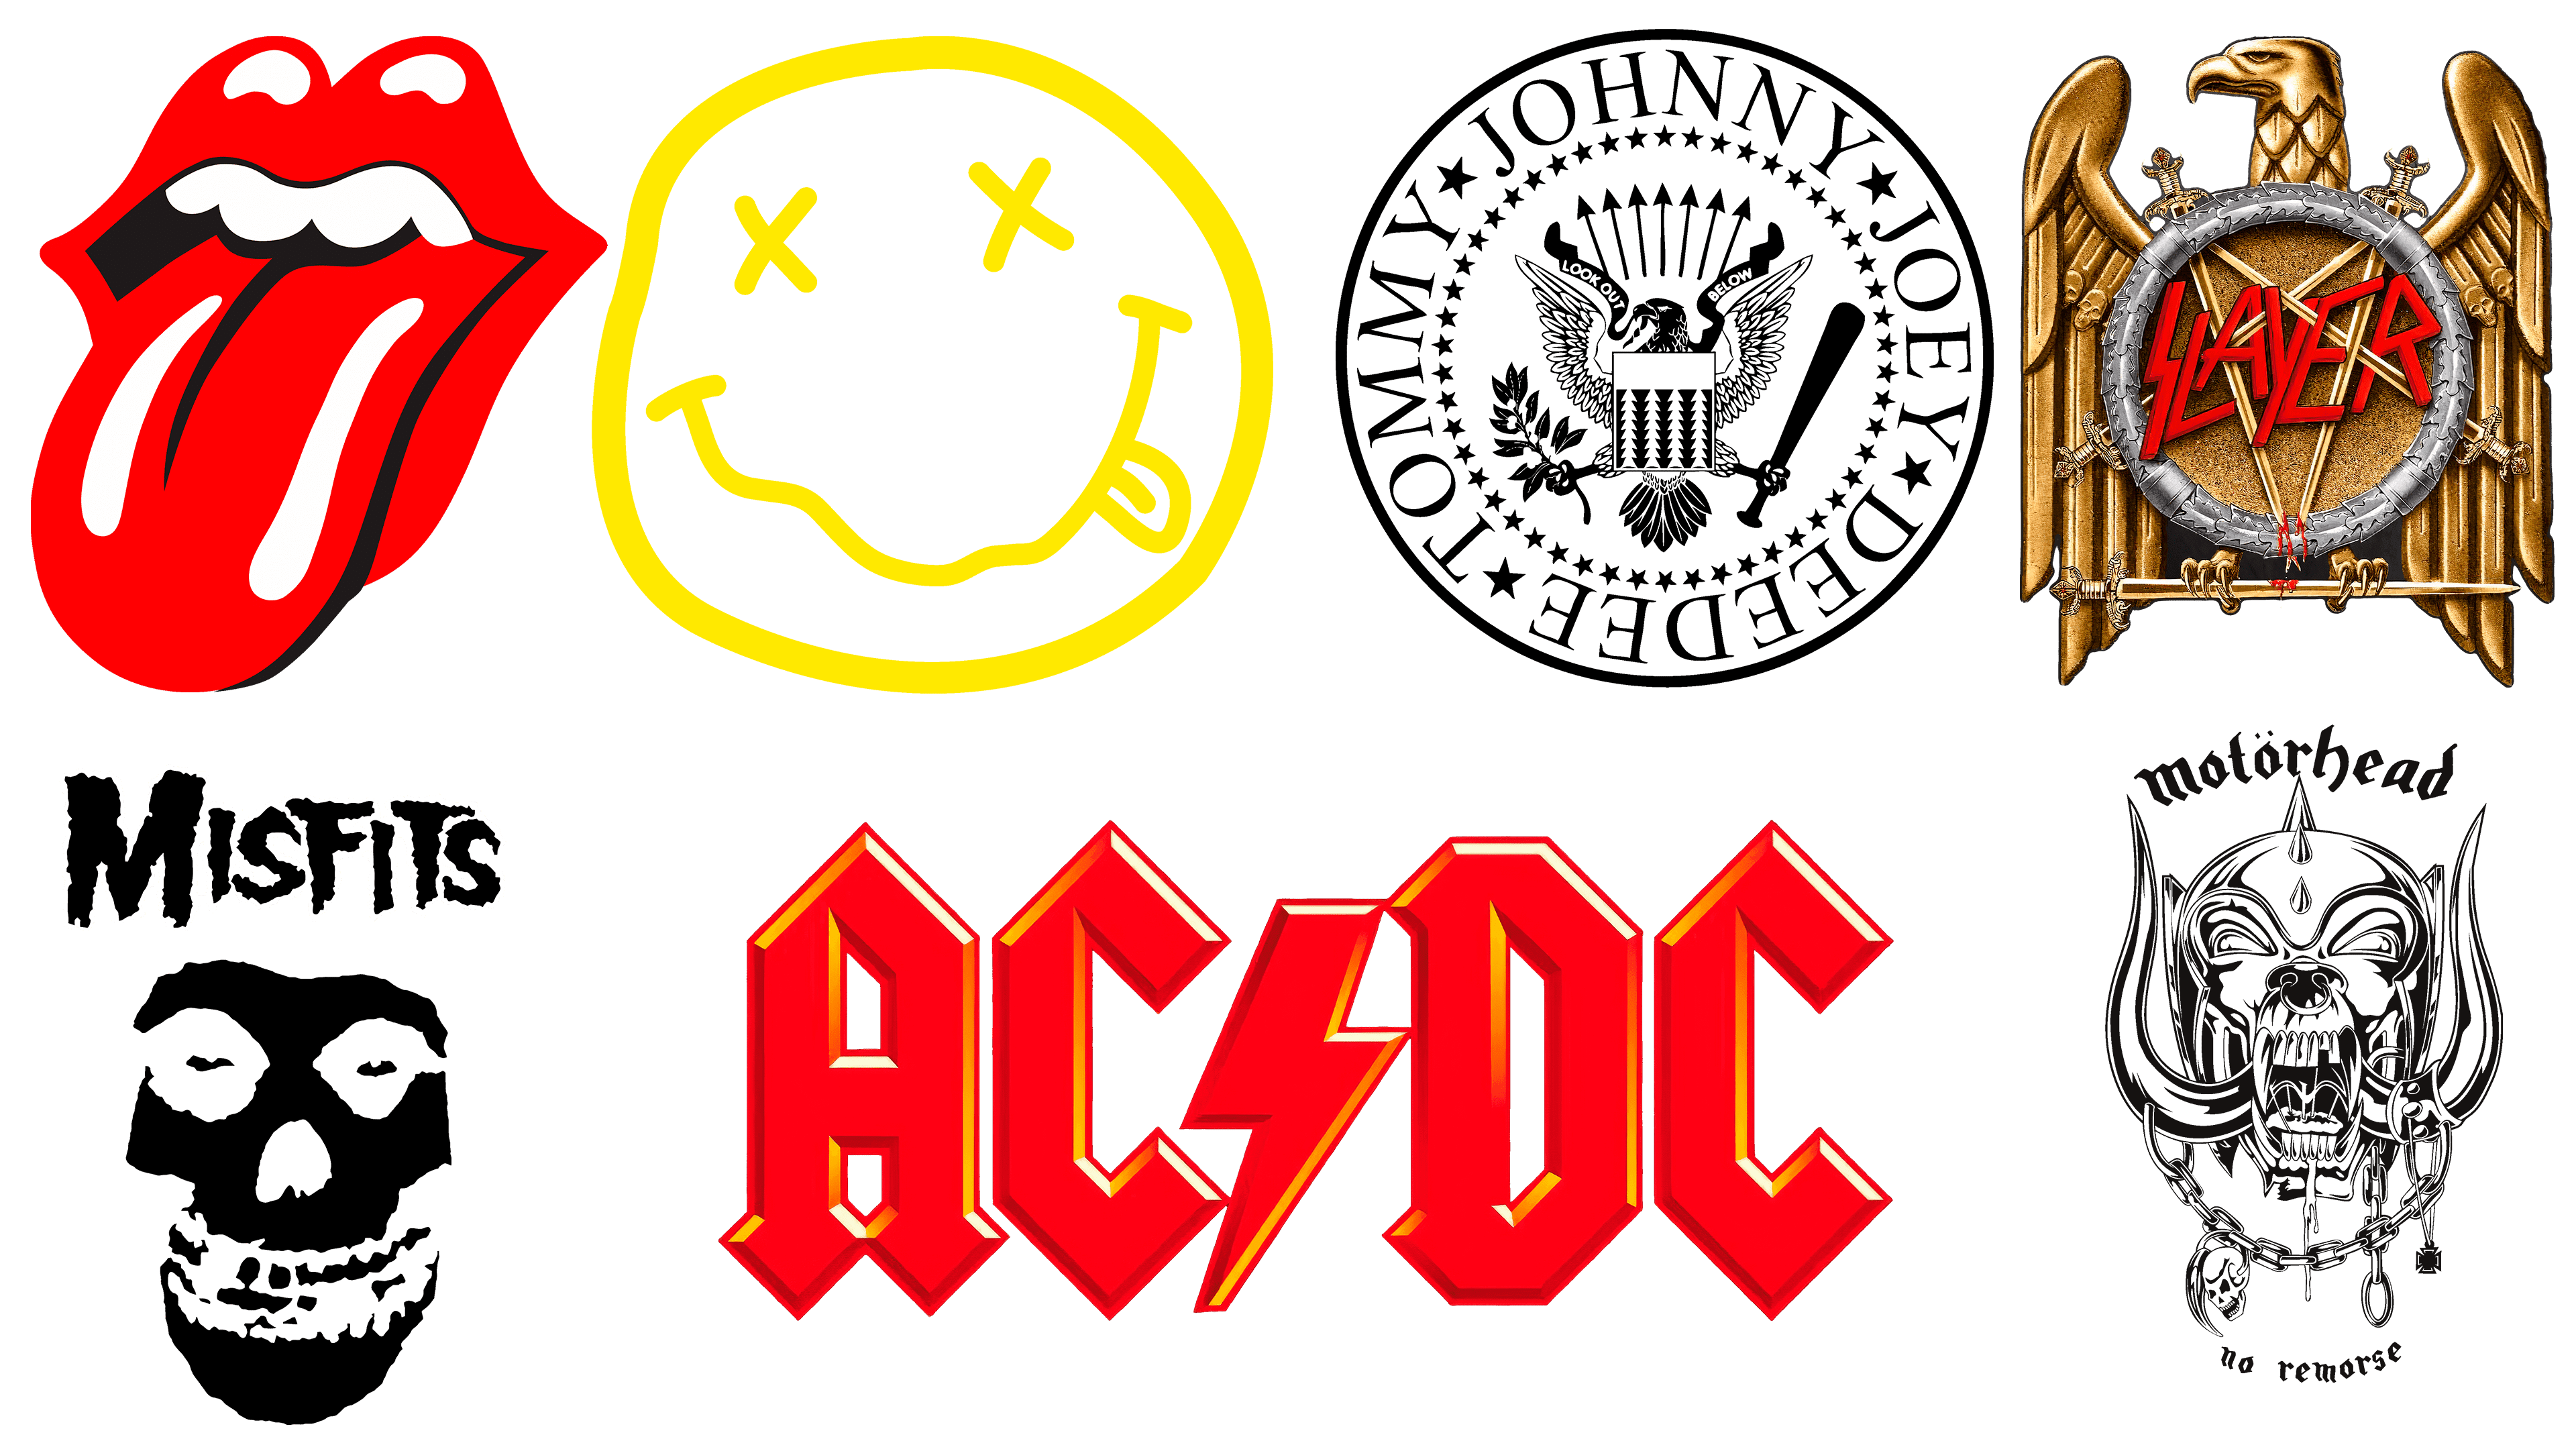 Band Logos